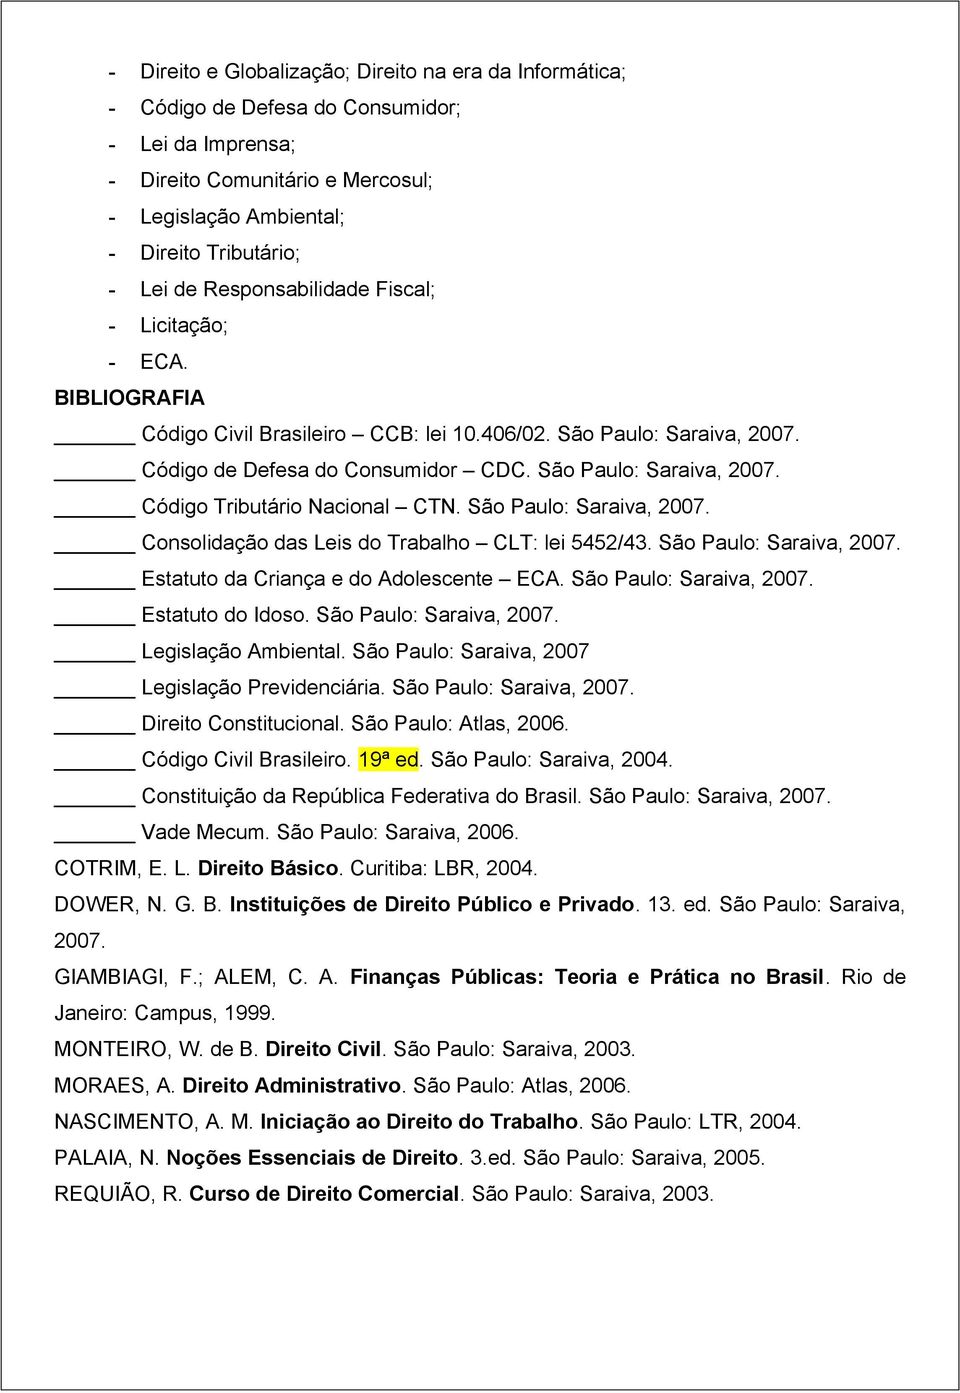 São Paulo: Saraiva, 2007. Consolidação das Leis do Trabalho CLT: lei 5452/43. São Paulo: Saraiva, 2007. Estatuto da Criança e do Adolescente ECA. São Paulo: Saraiva, 2007. Estatuto do Idoso.